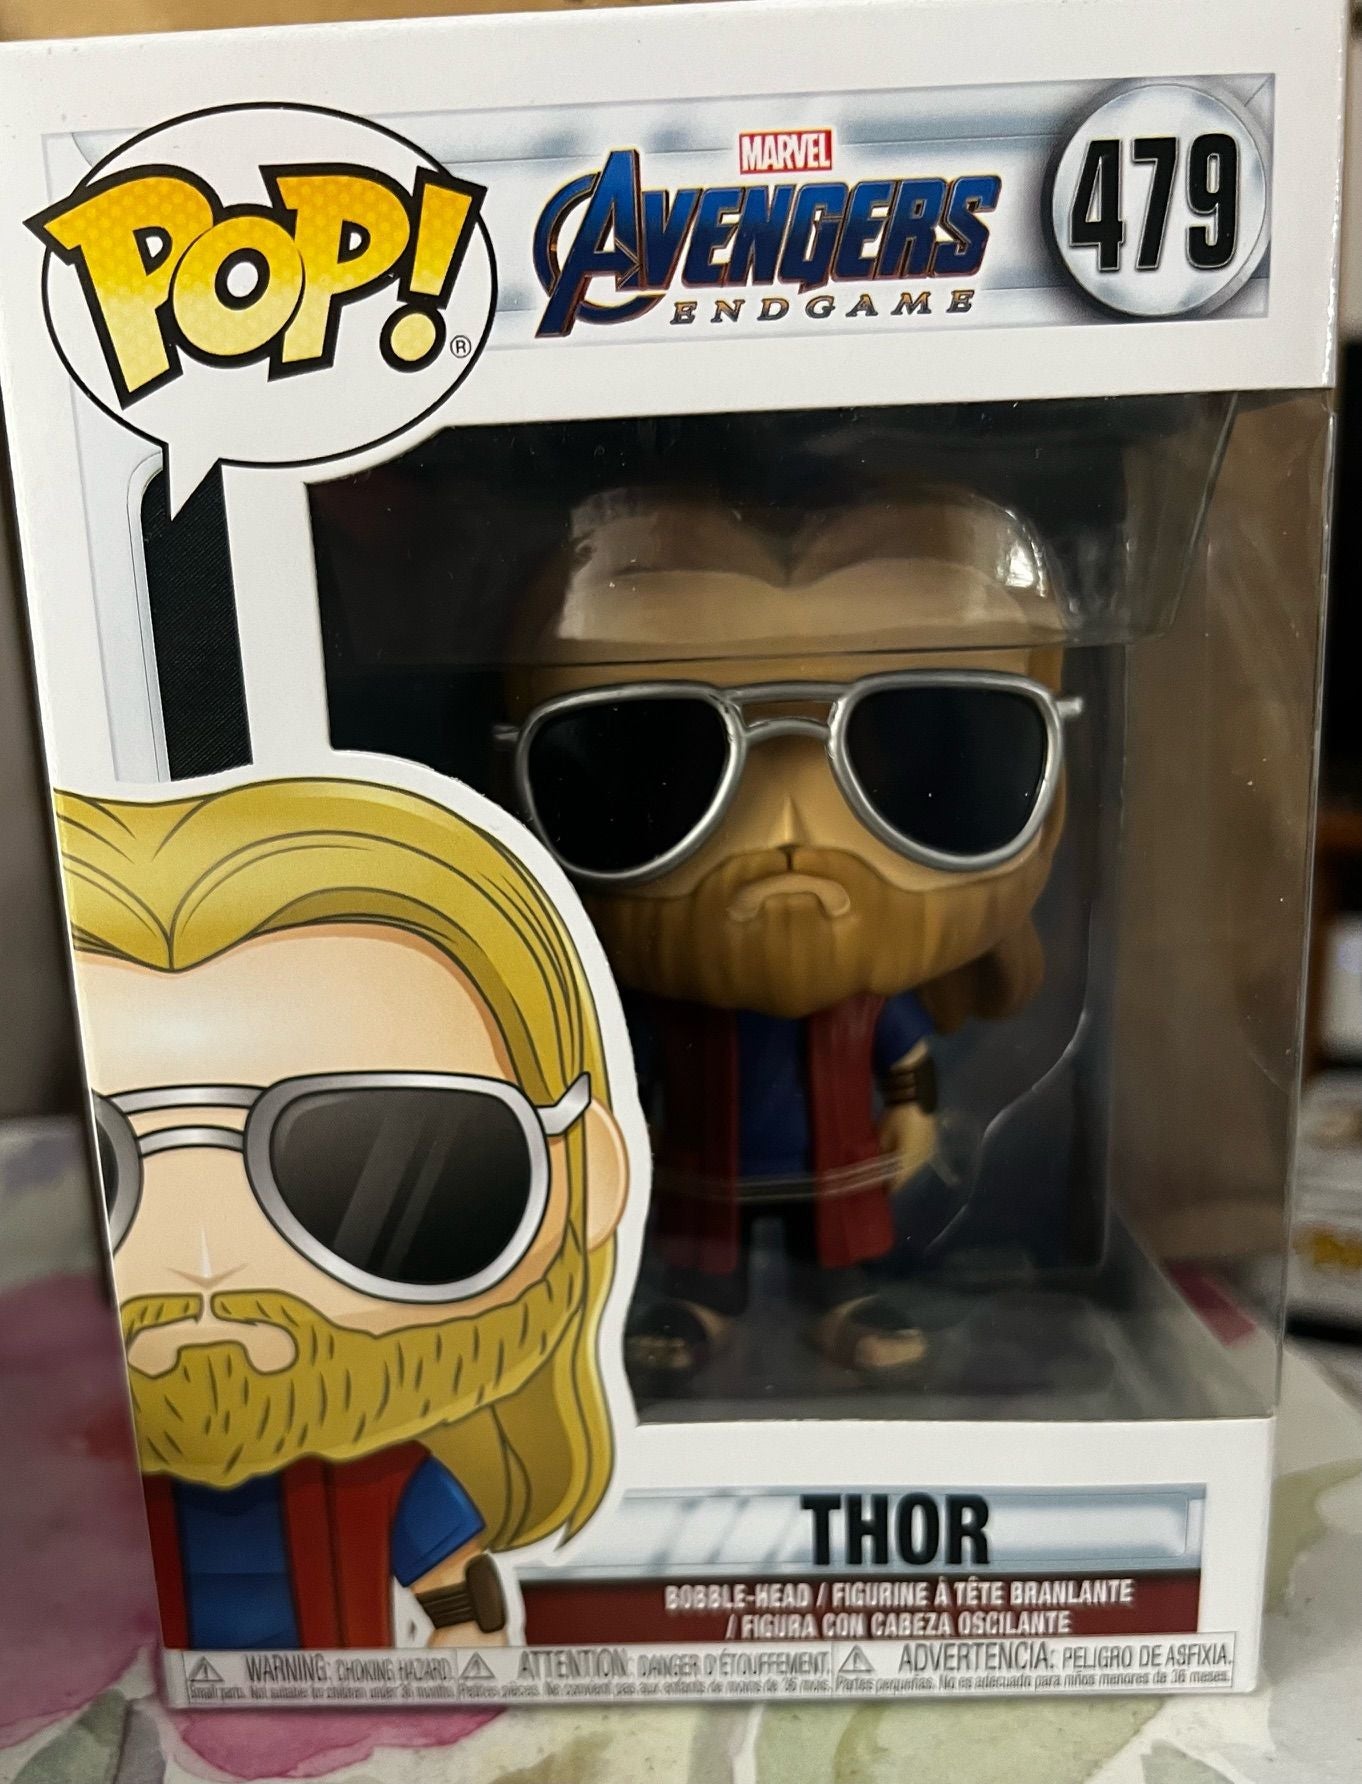 #479 Thor - Marvel Avengers Endgame - Funko Pop - 1